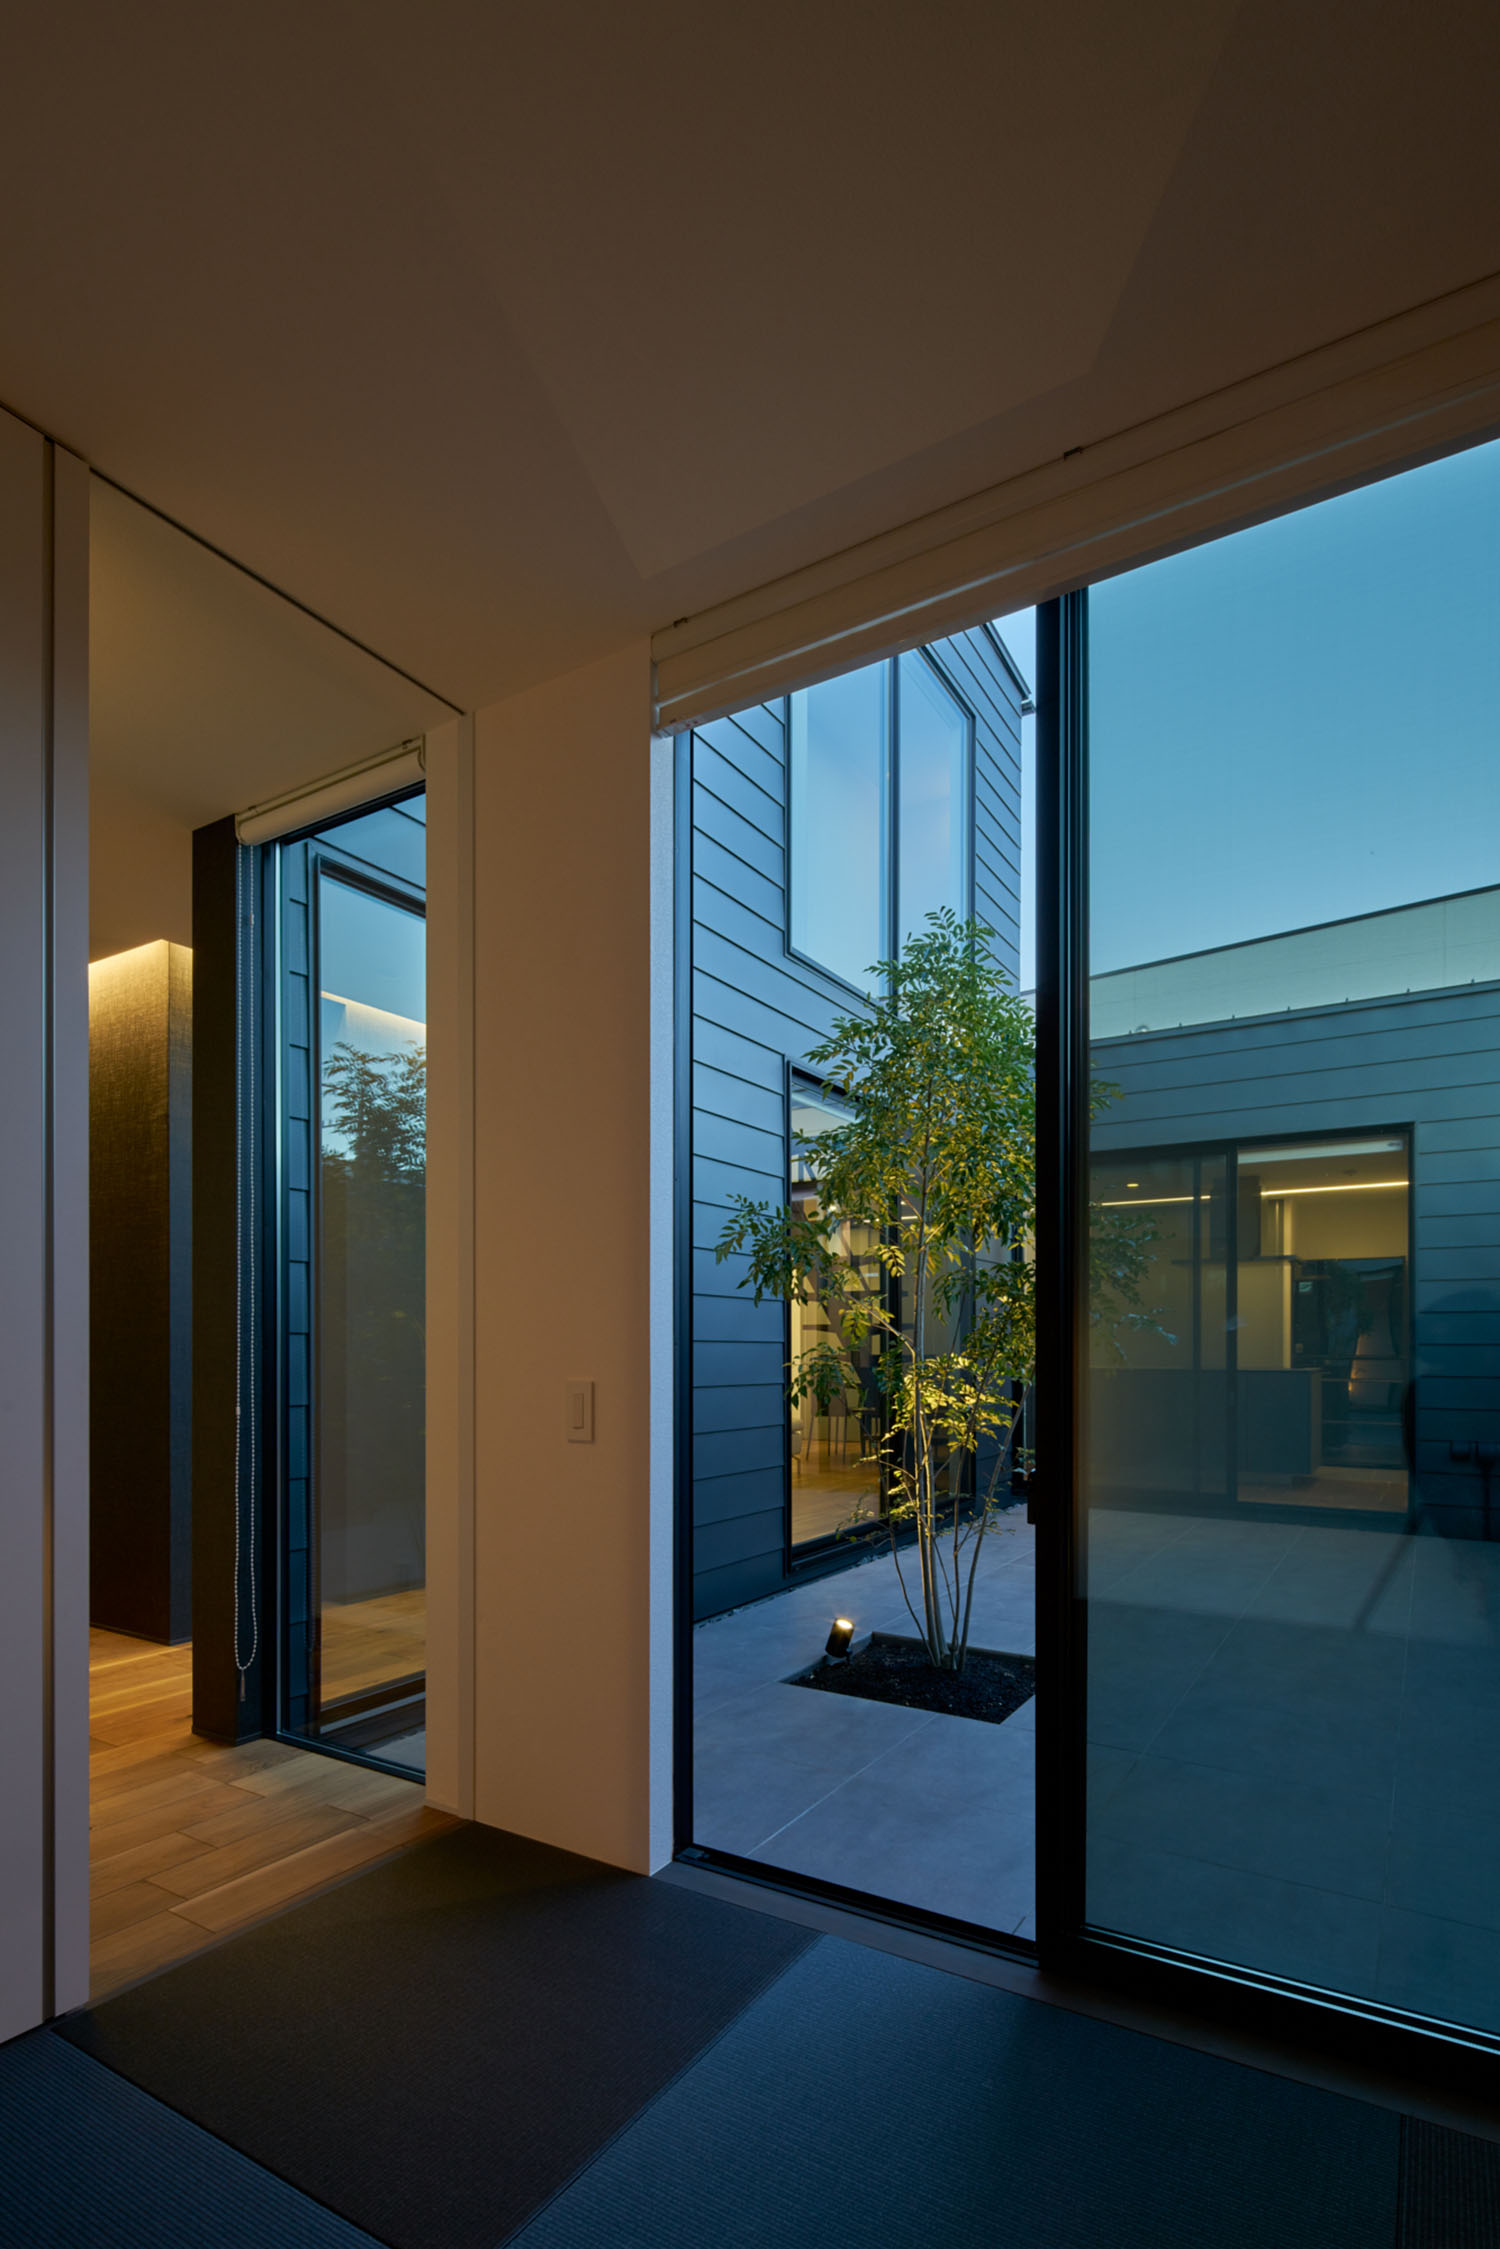 中庭と繋がる大きな窓がある、黒い琉球畳の和室・デザイン住宅